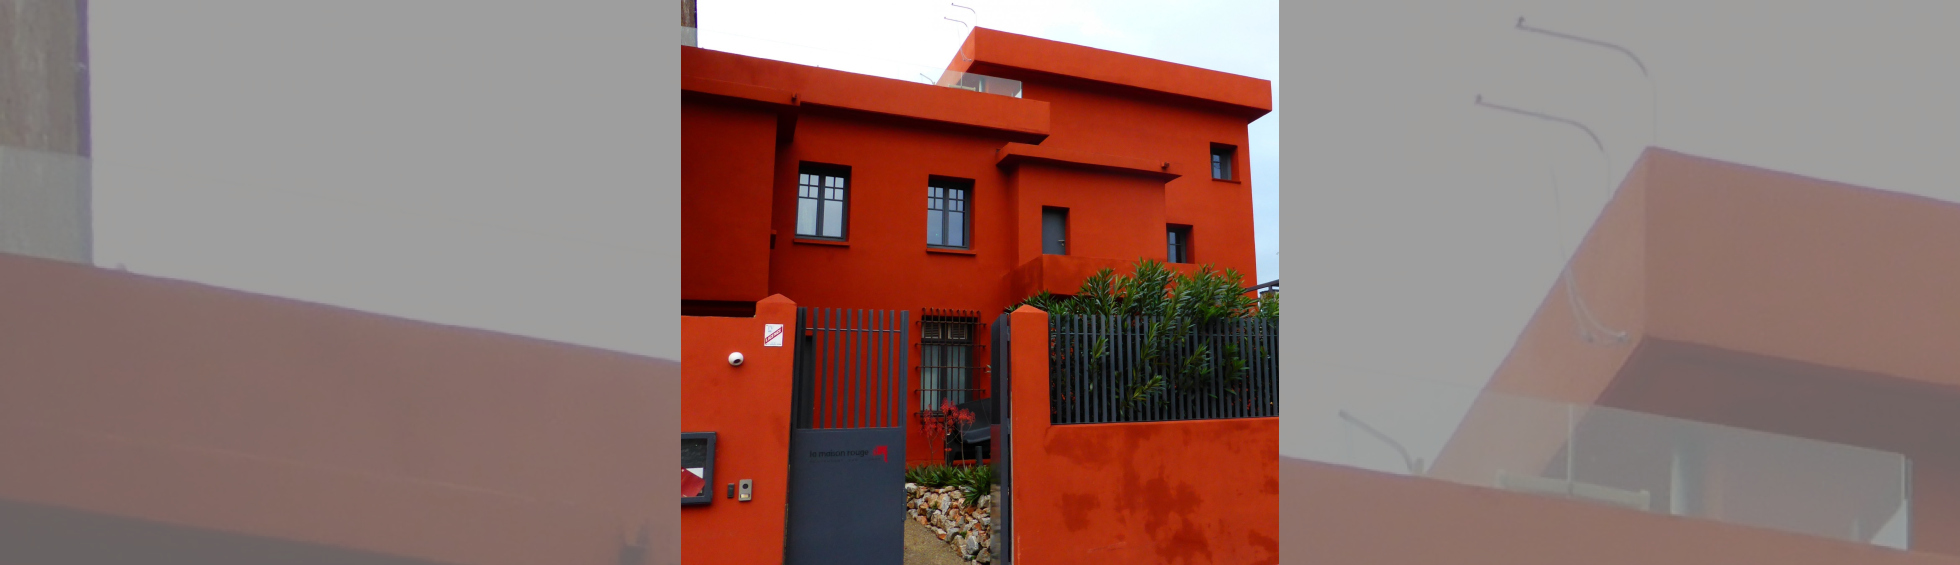 La Maison rouge, atelier du peintre Louis Bausil, de Raoul Castan, 1925, 41 rue Rabelais. 